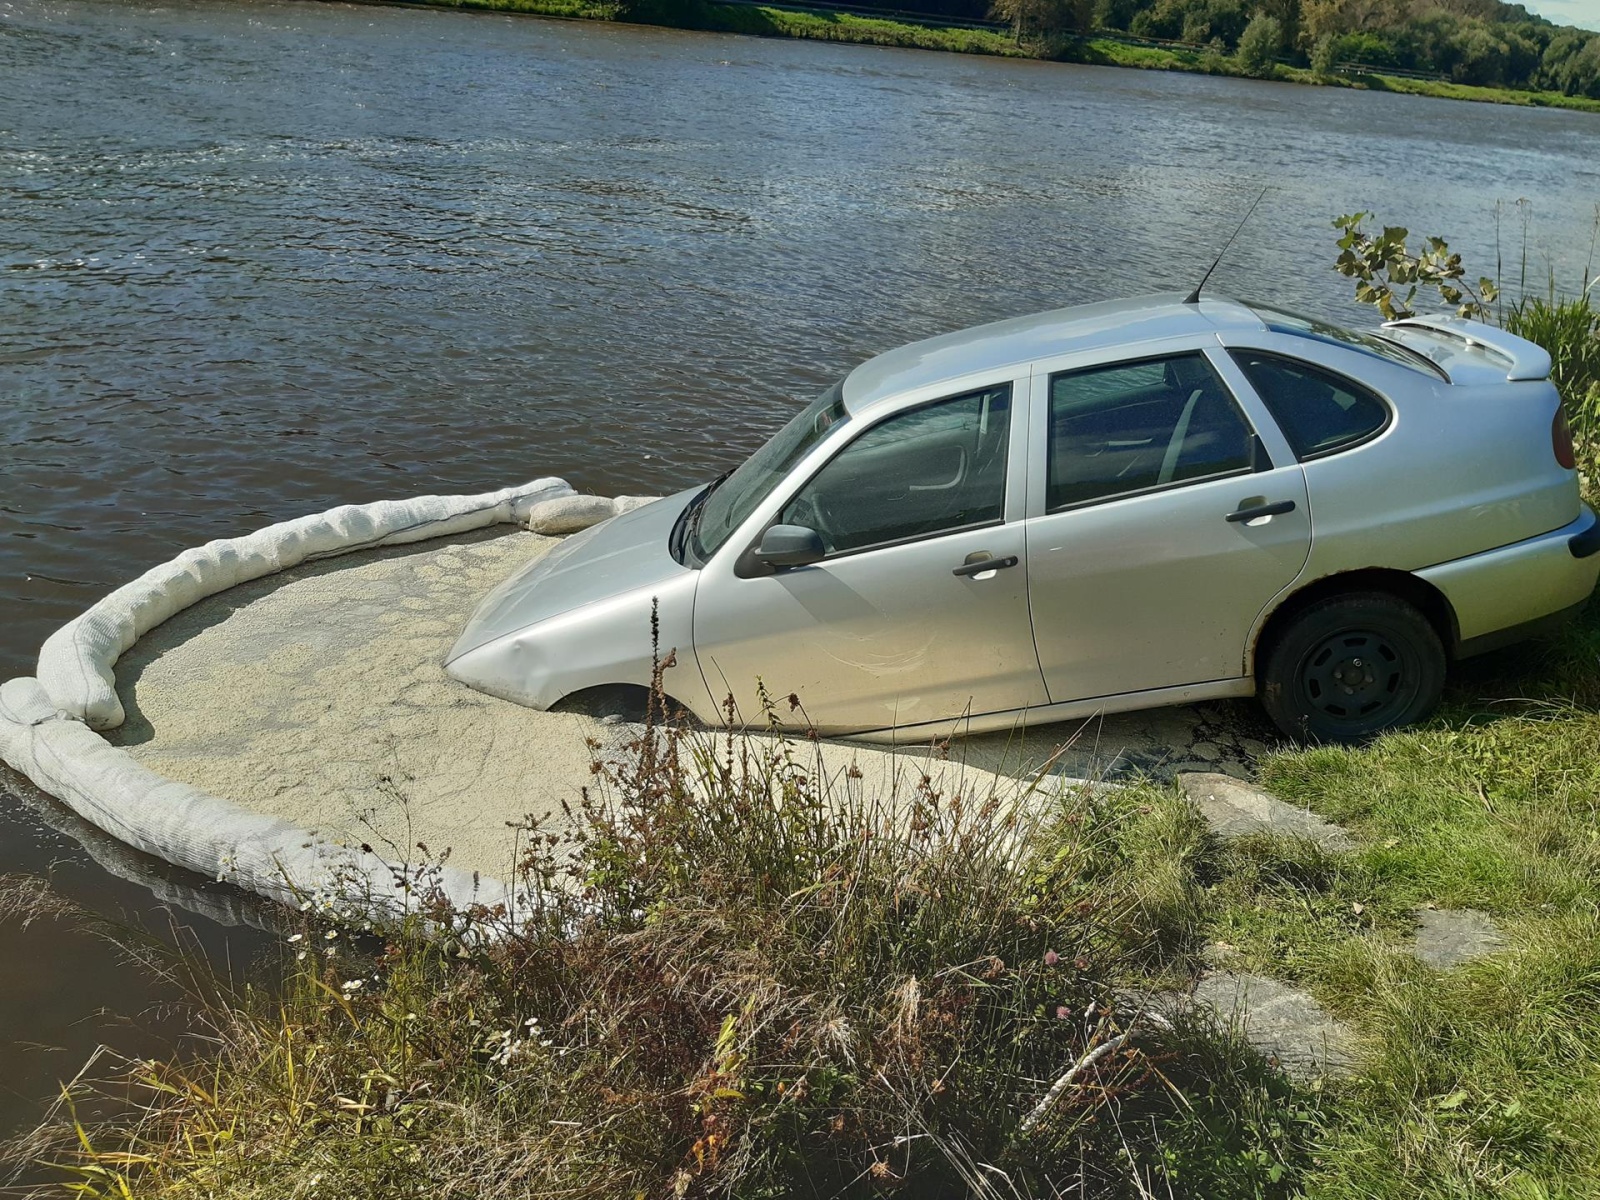 166-Osobní vozidlo sjeté do řeky v Kralupech nad Vltavou.jpg